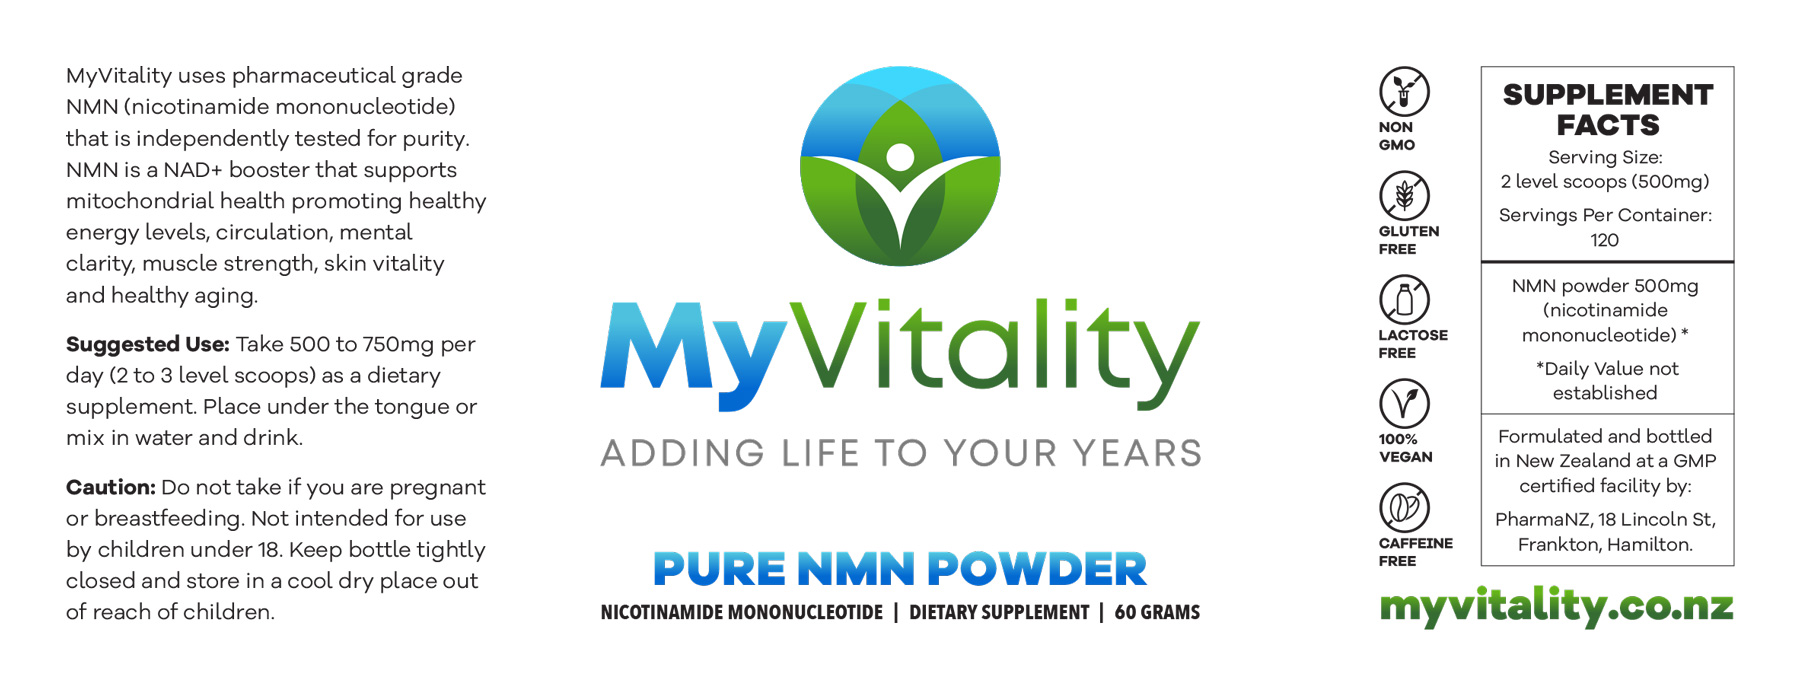 NMN Powder Fact Sheet